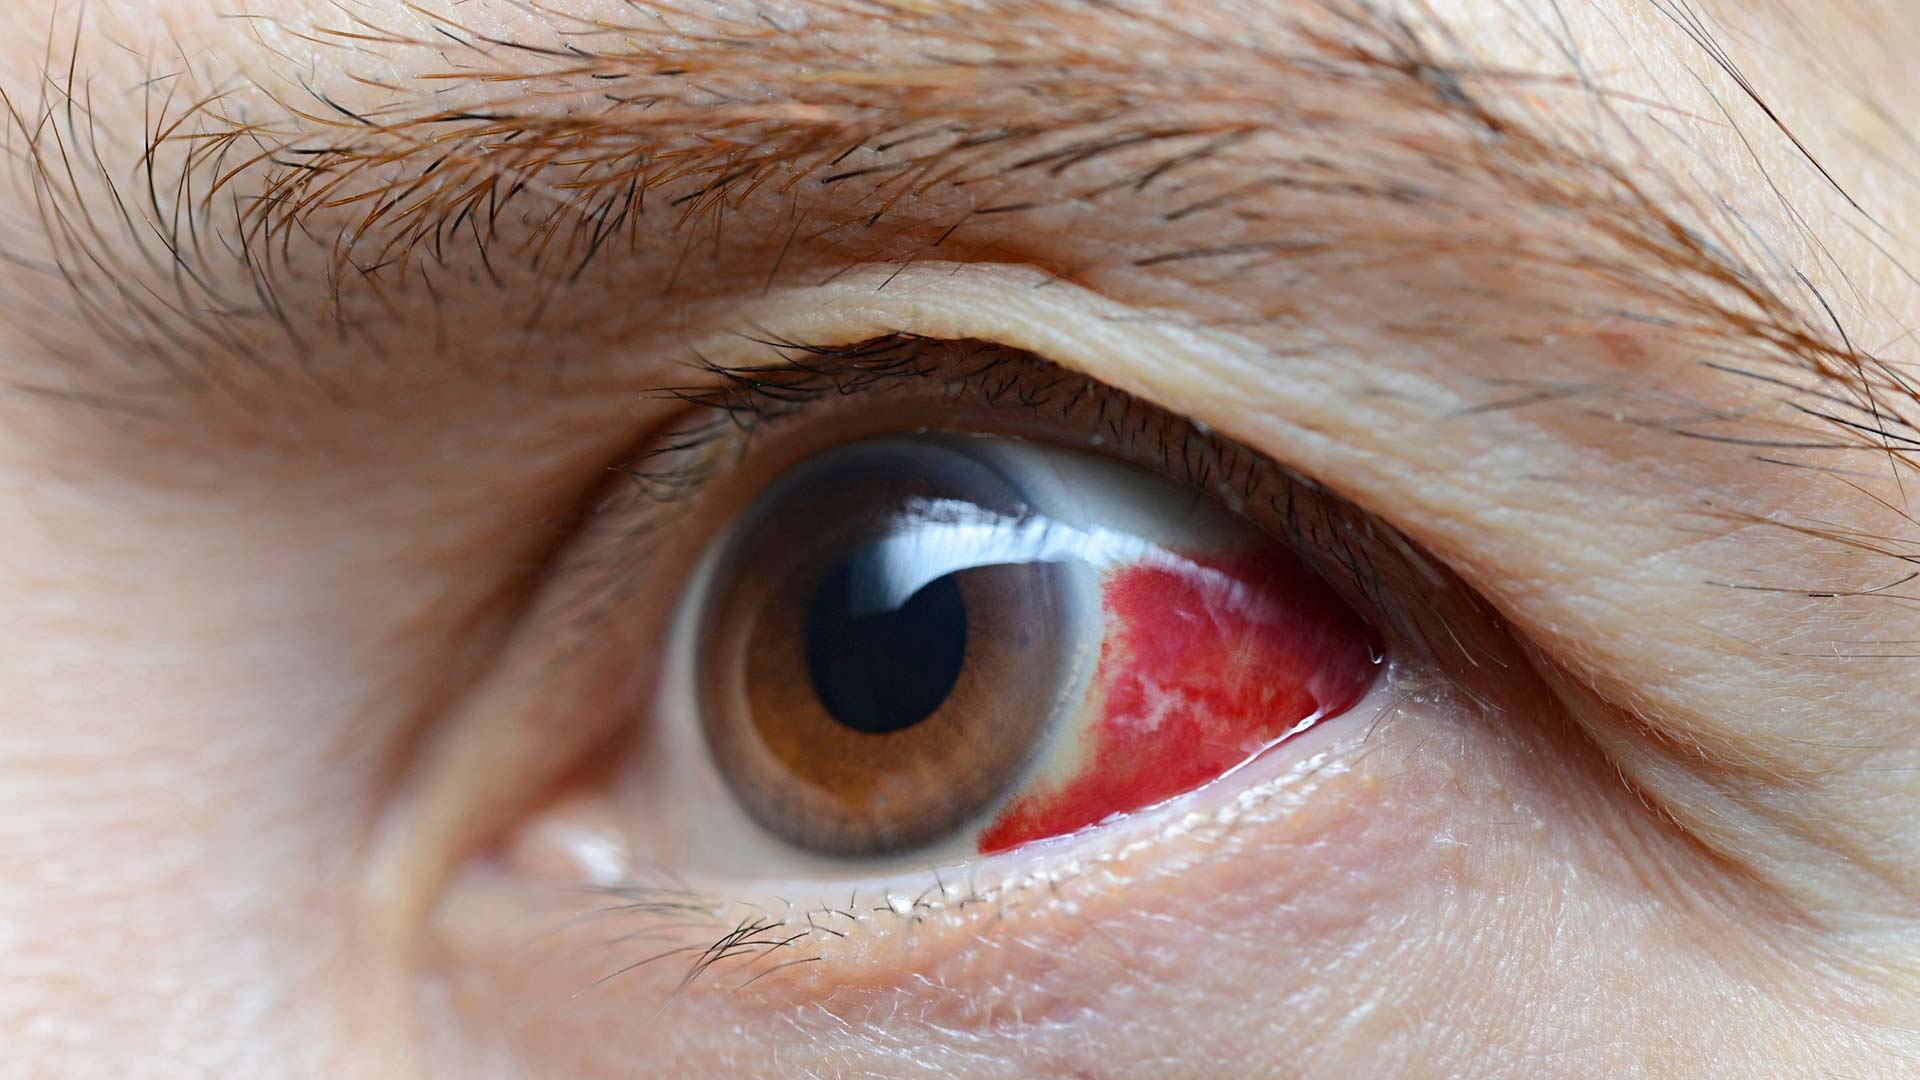 Jos silmän verisuonen katkeaminen johtuu ulkoisesta vammasta, silloin sitä täytyy lähteä näyttämään lääkärille.